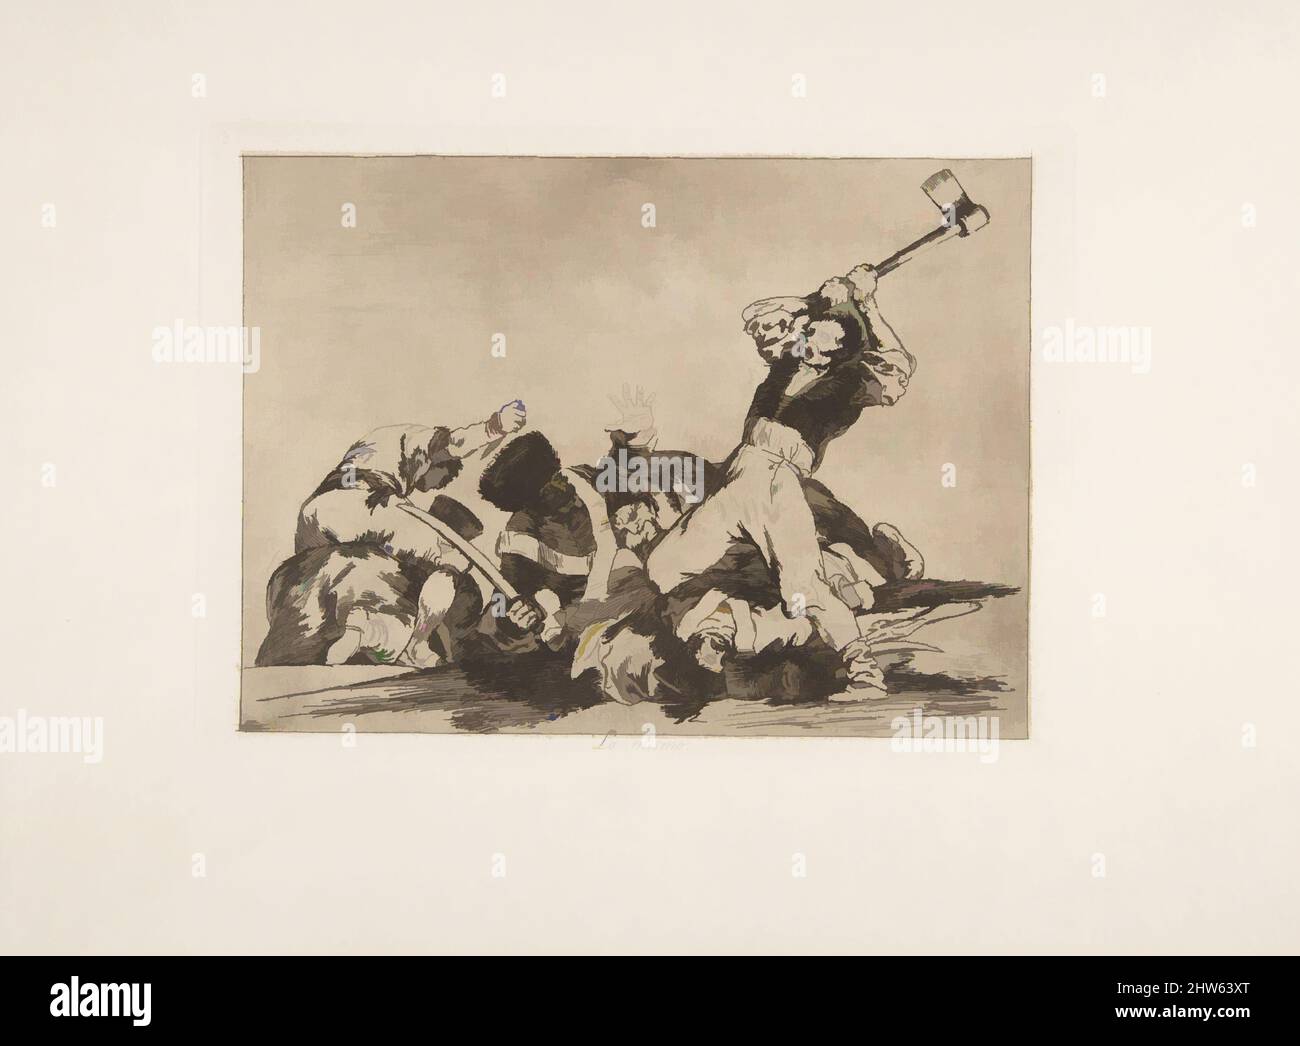 Art inspiré de la même (Lo mismo), des désastres de la guerre (Los Desastres de la Guerra), planche 3, 1810 ( publié en 1863), Etching, lavis, Drypoint, burin et burnisher, Plaque : 6 1/4 × 8 9/16 po (15,8 × 21,8 cm), Prints, Goya (Francisco de Goya y Lucientes) (Espagnol, Fuendetodos, oeuvres classiques modernisées par Artotop avec une touche de modernité. Formes, couleur et valeur, impact visuel accrocheur sur l'art émotions par la liberté d'œuvres d'art d'une manière contemporaine. Un message intemporel qui cherche une nouvelle direction créative. Artistes qui se tournent vers le support numérique et créent le NFT Artotop Banque D'Images